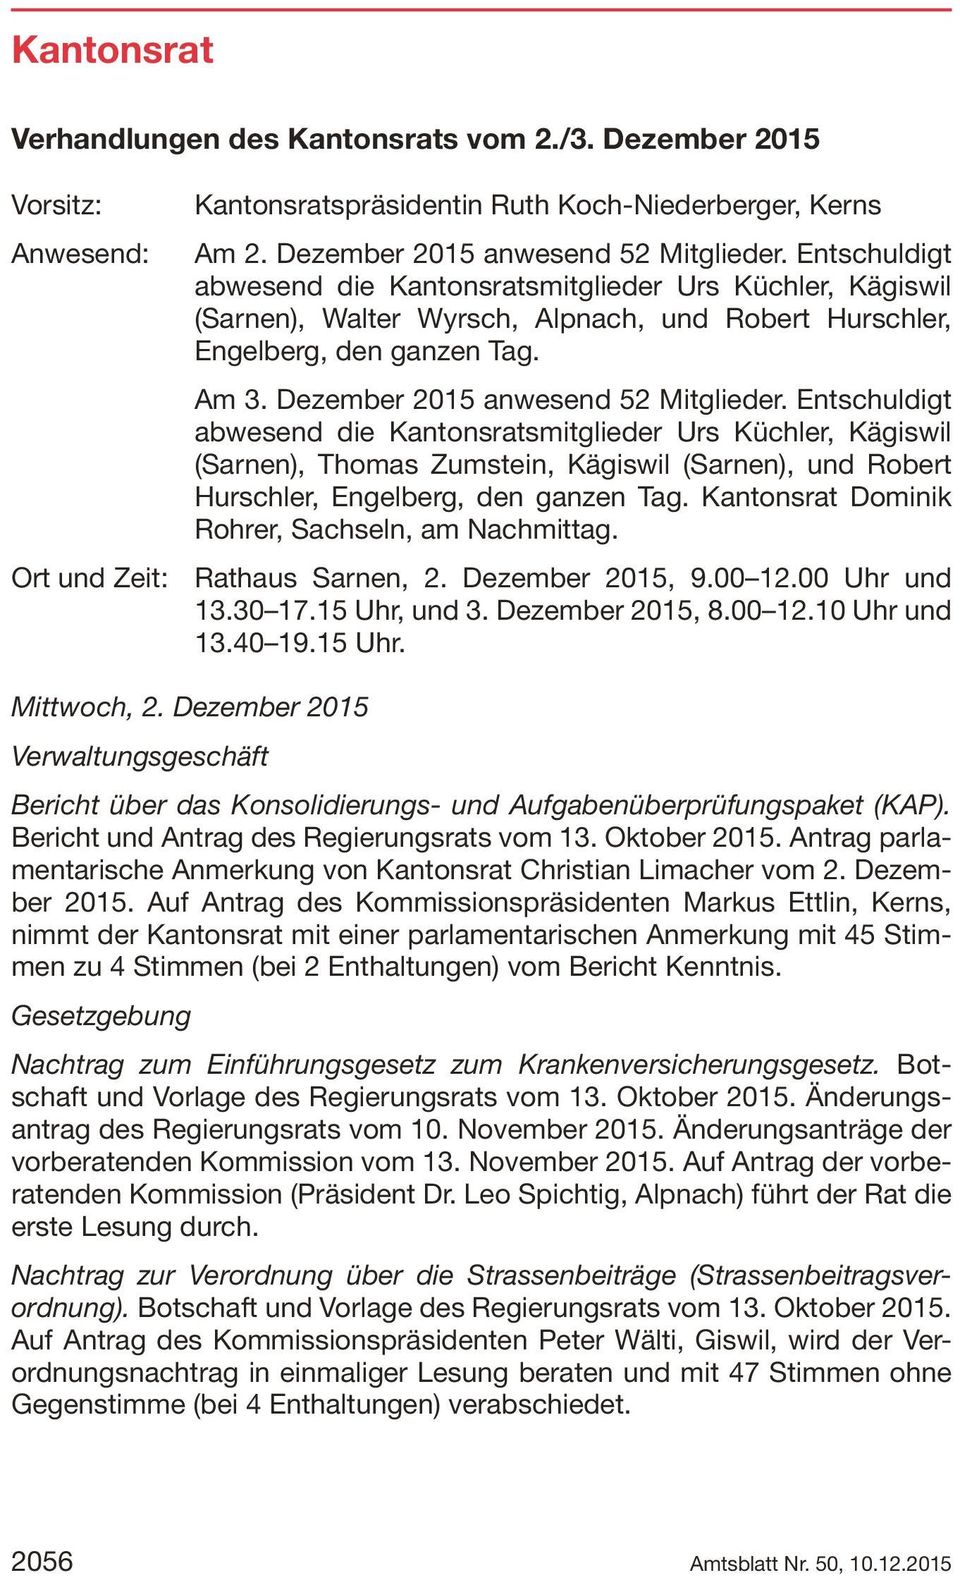 Entschuldigt abwesend die Kantonsratsmitglieder Urs Küchler, Kägiswil (Sarnen), Thomas Zumstein, Kägiswil (Sarnen), und Robert Hurschler, Engelberg, den ganzen Tag.